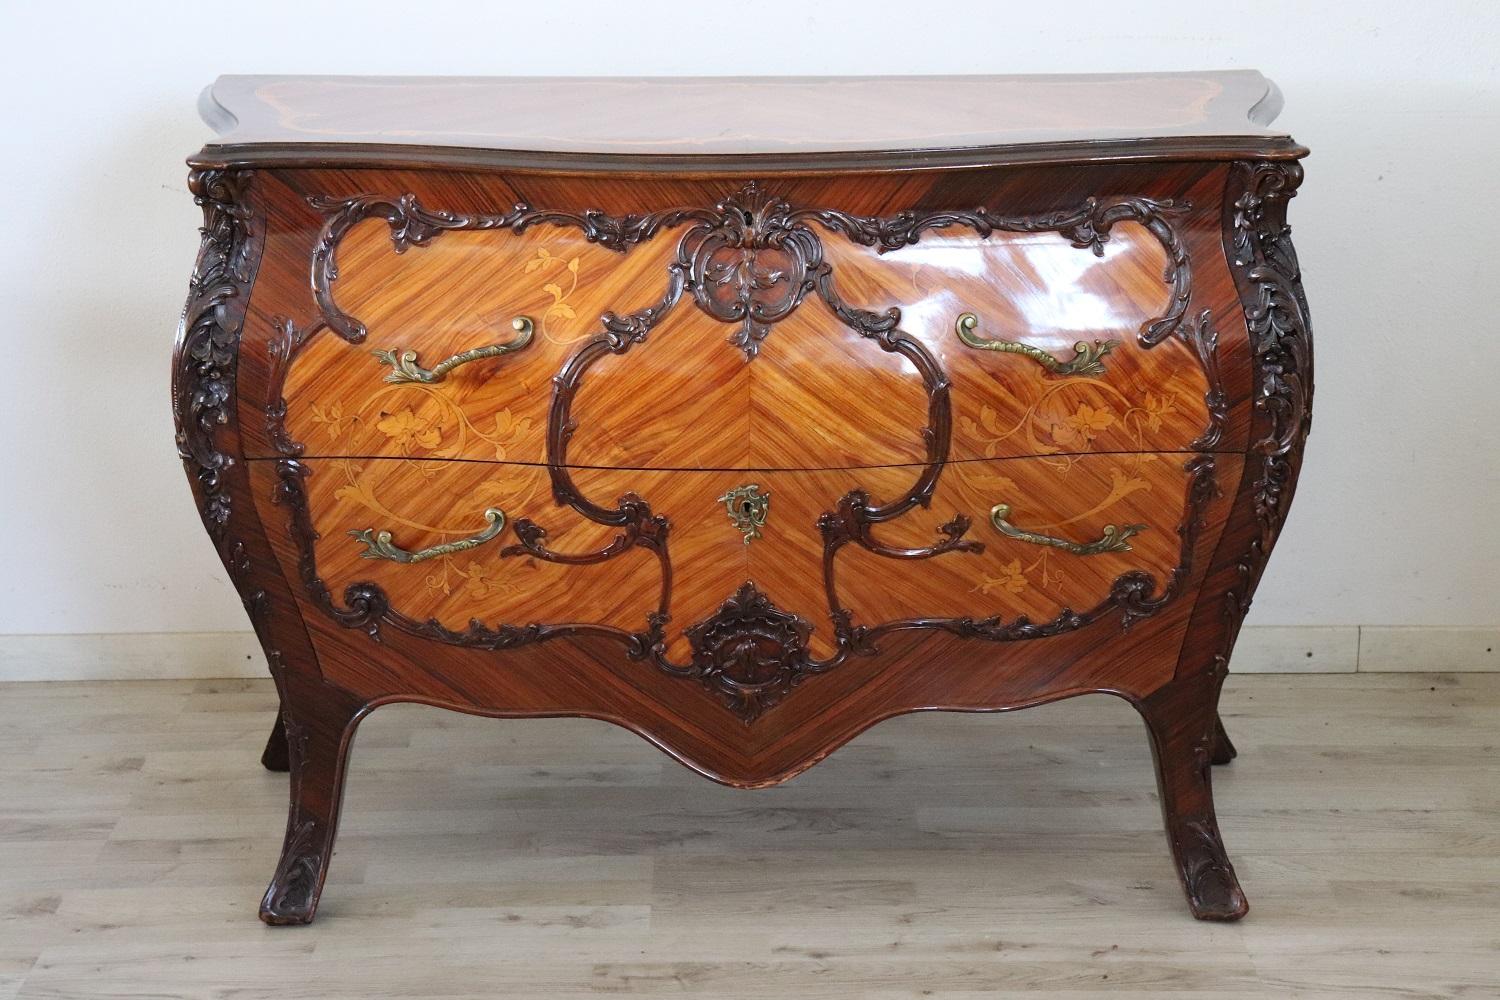 Möbel im Stil Louis XV, 1930er Jahre. Das feine Palisanderholz mit Intarsien. Raffinierte und reiche Intarsienarbeit von floralem Geschmack auf jeder Seite des Möbelstücks. Besonders runde Form. An der Vorderseite befinden sich zwei bequeme große